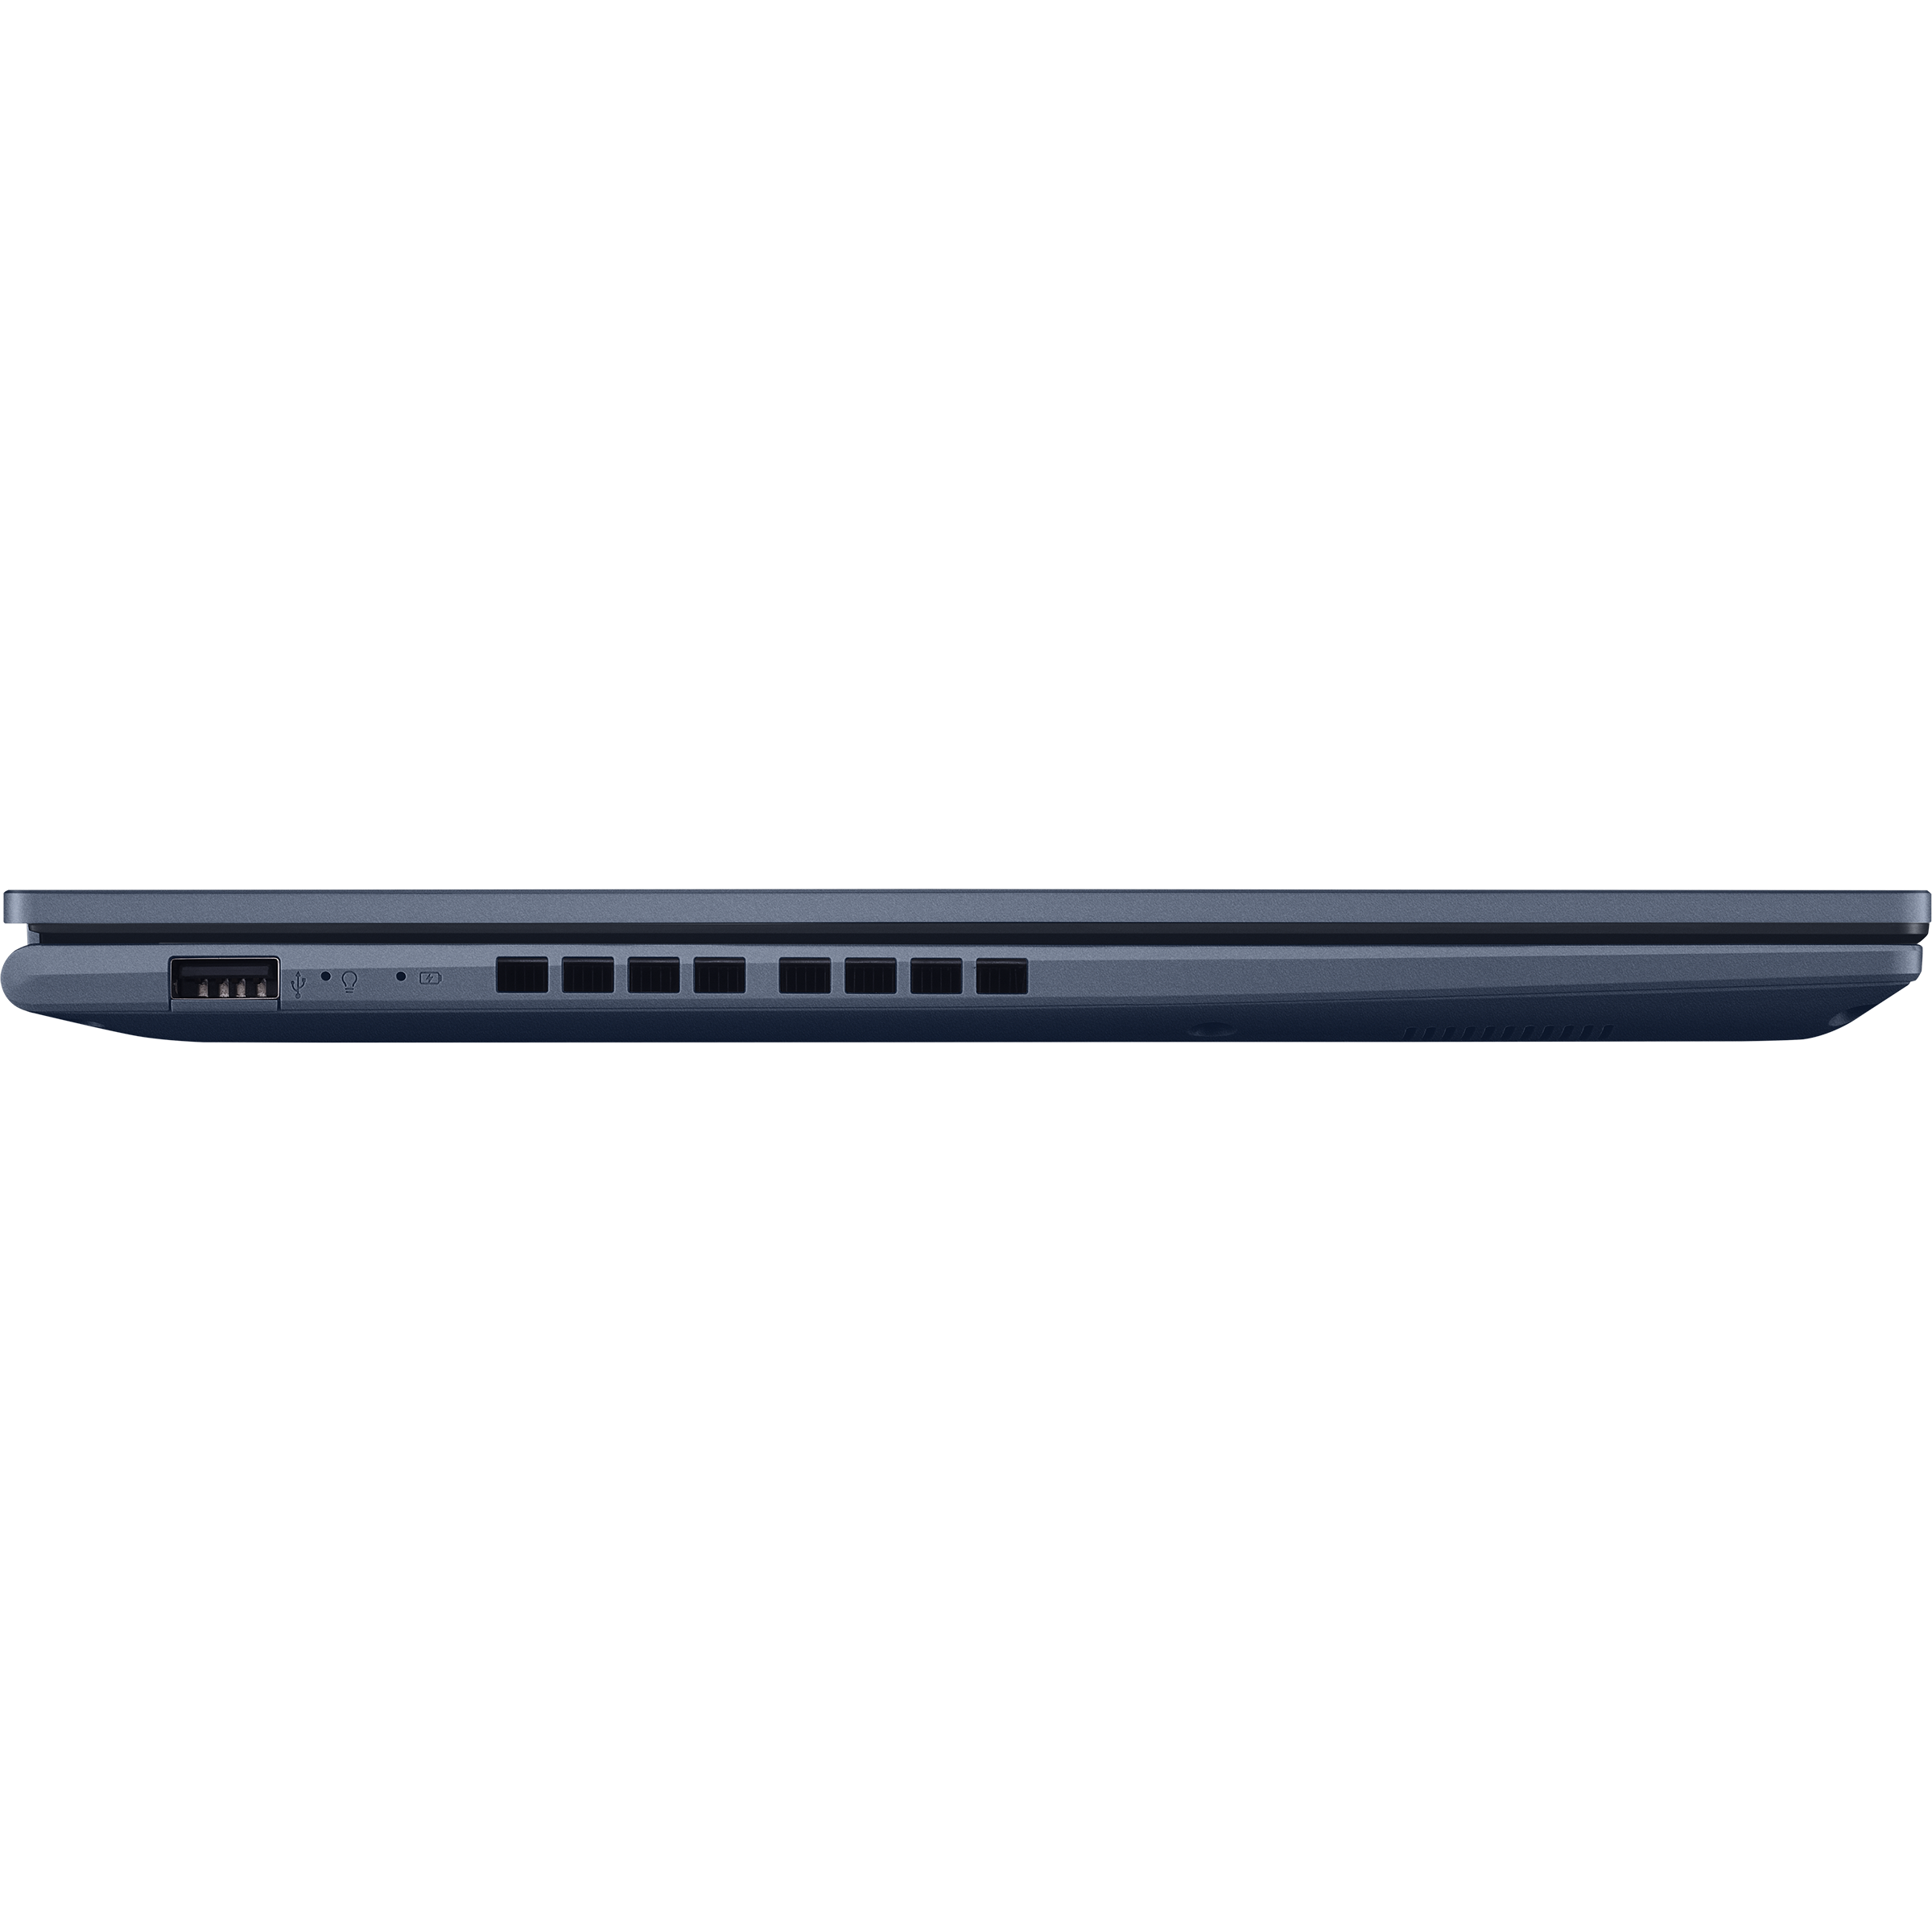 Vivobook 14 (M1402, AMD Ryzen 4000 series)｜Laptops For Home｜ASUS USA